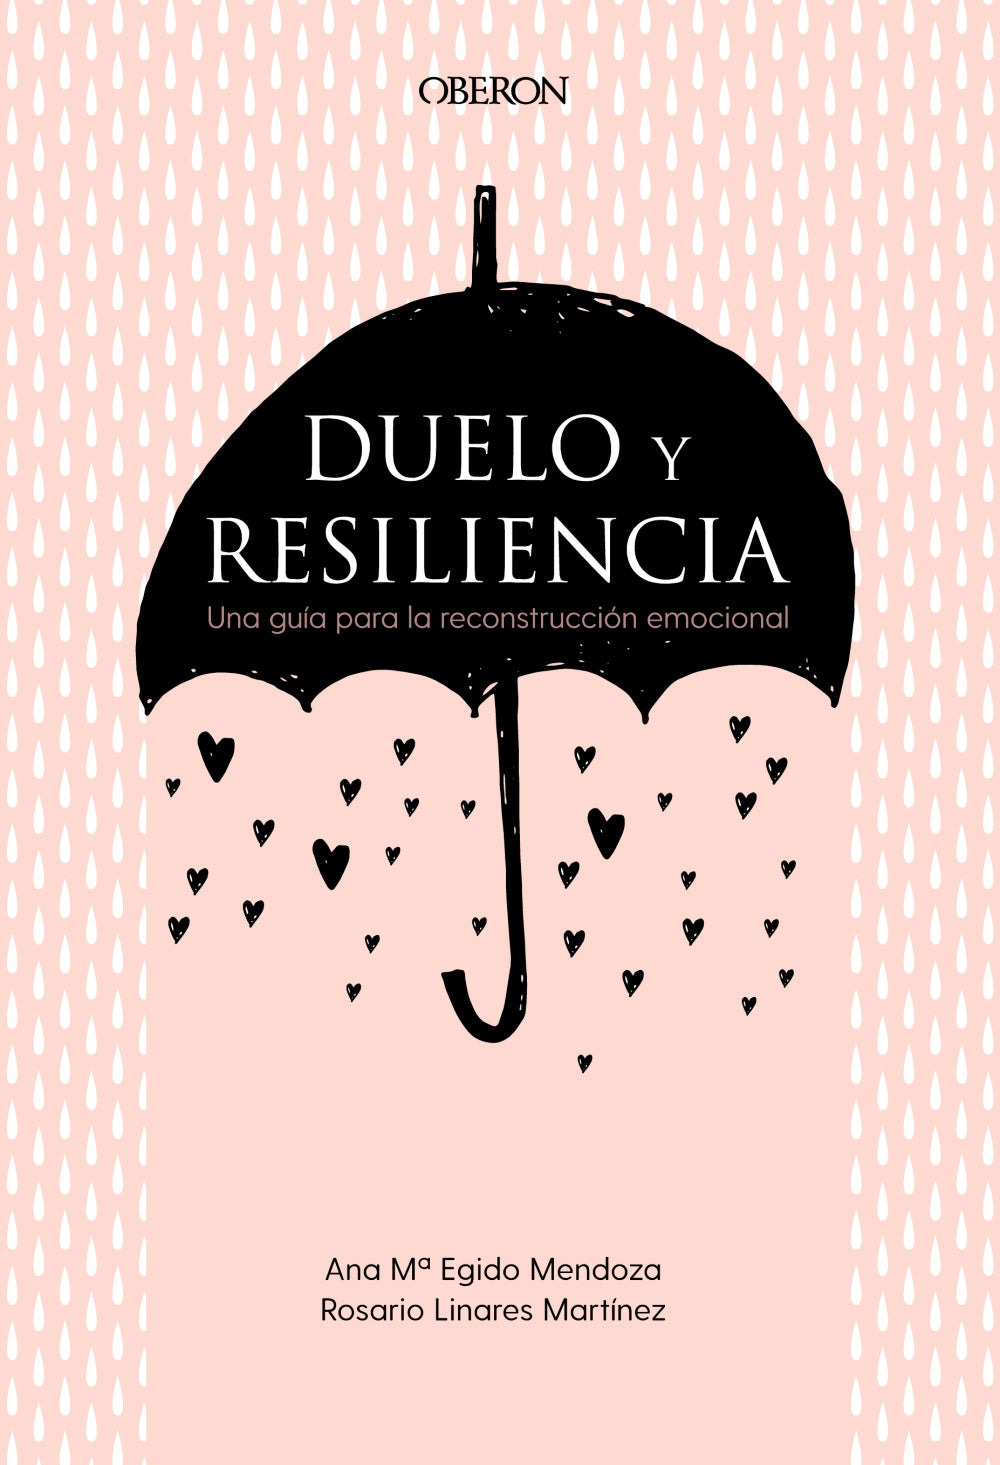 DUELO Y RESILIENCIA - Ana María Egido Mendoza y Rosario Linares Martínez